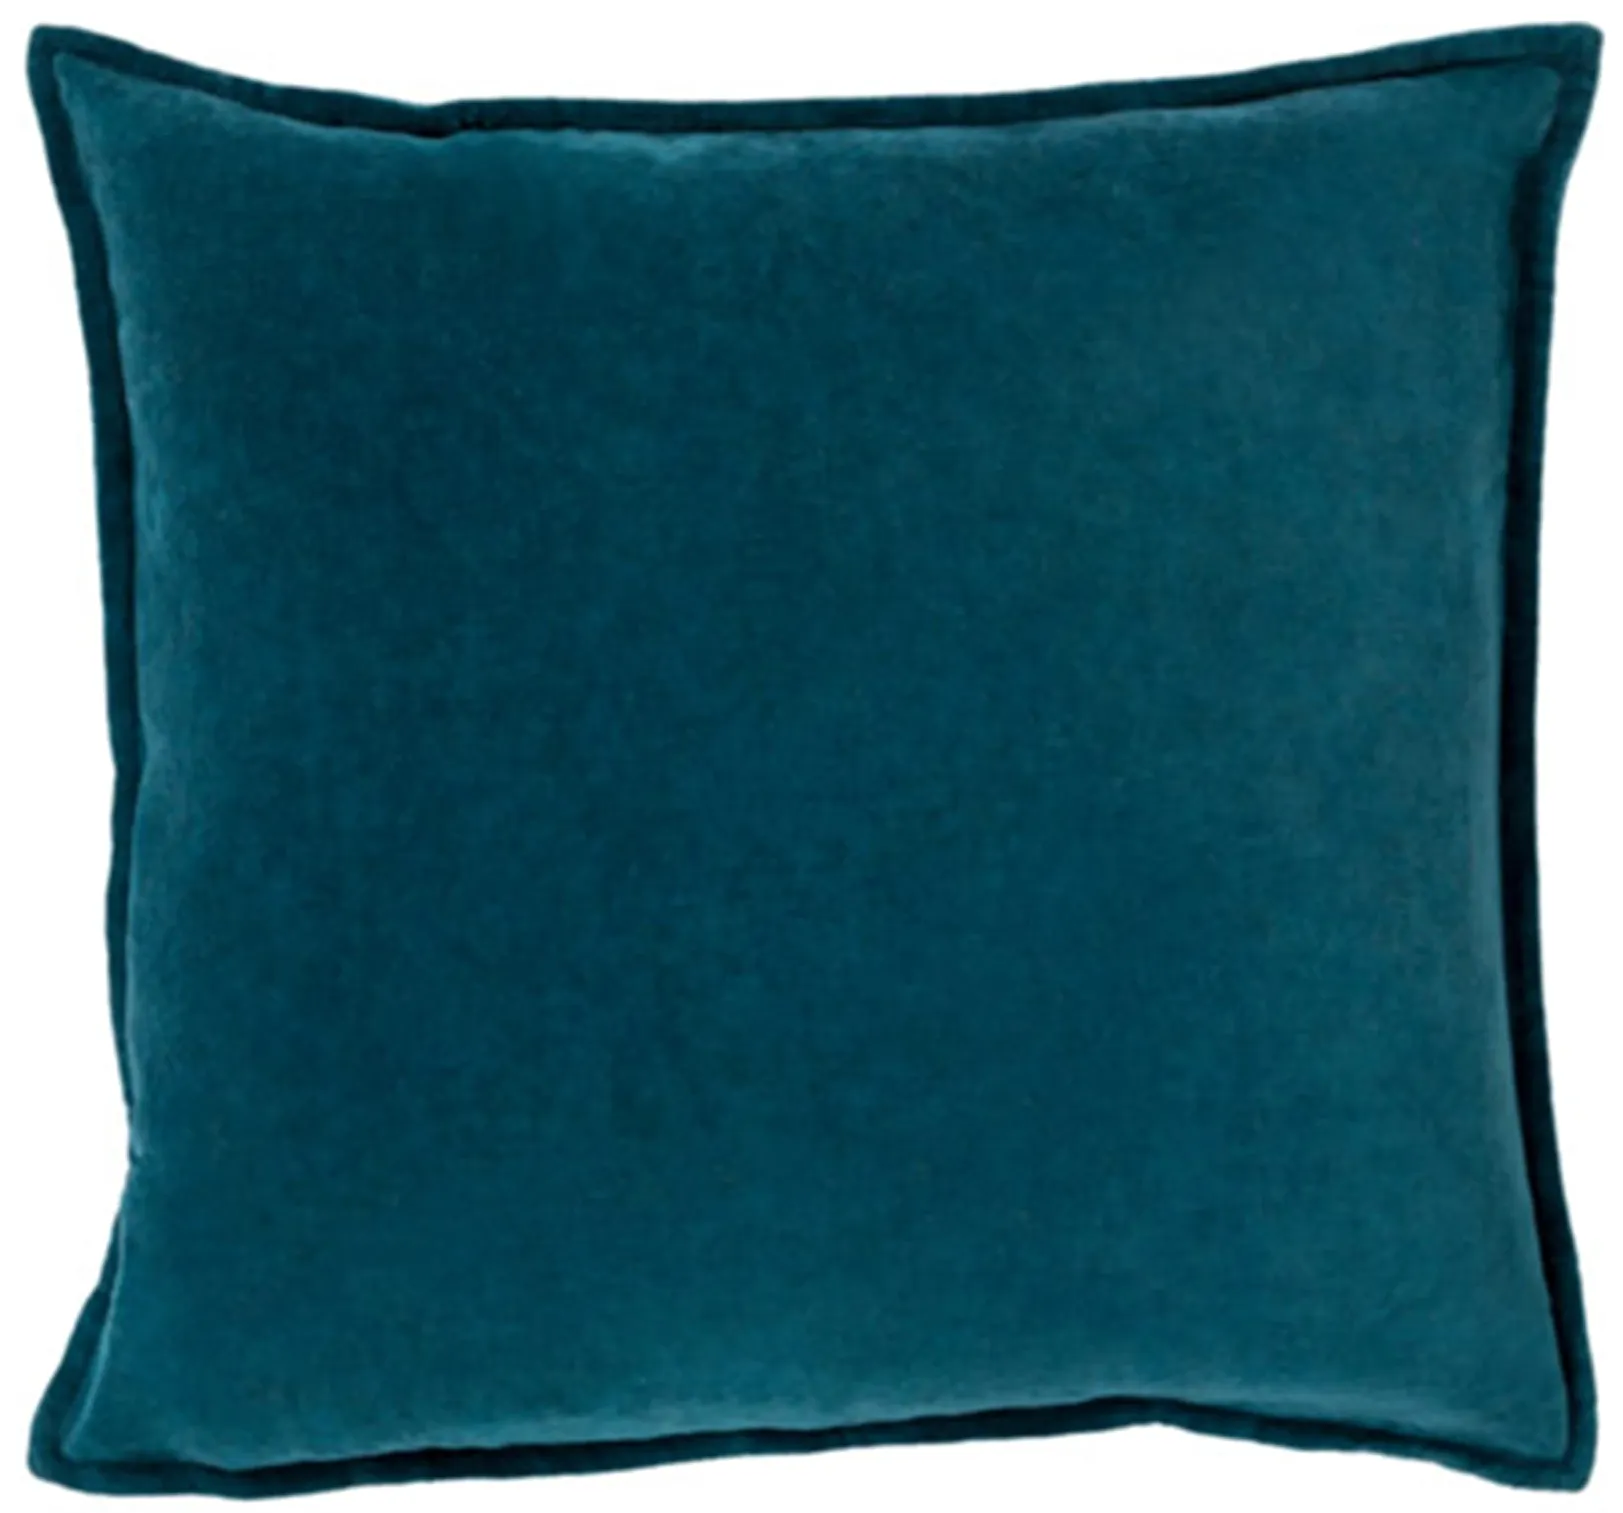 Teal Velvet Pillow 18"W x 18"H